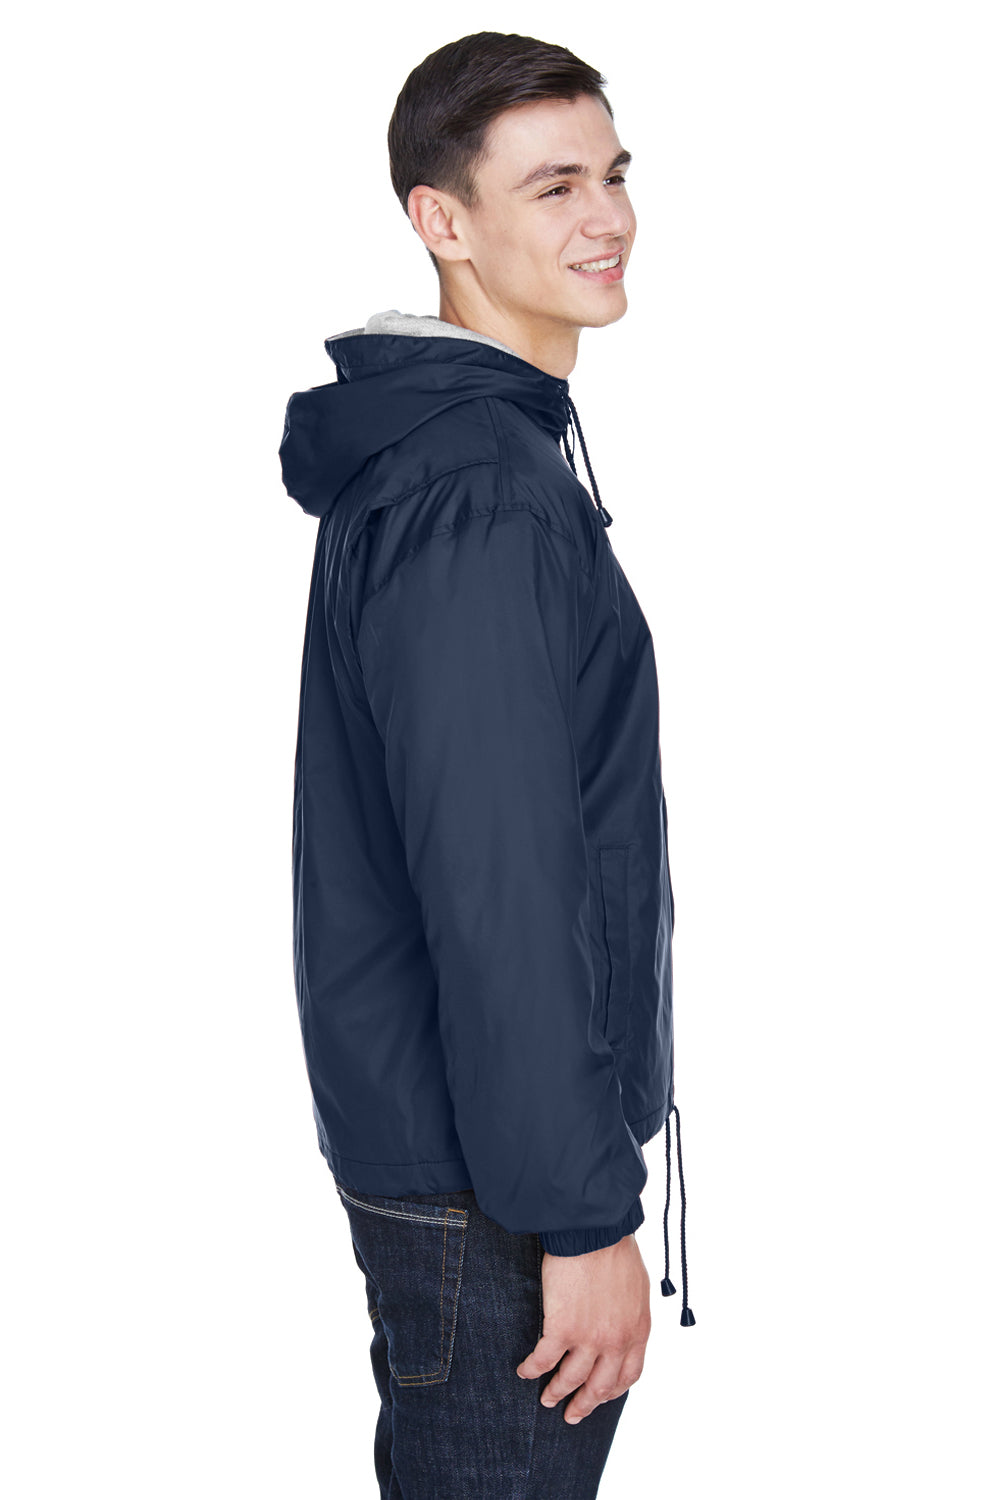 UltraClub 8915 Mens Wind & Water Resistant Full Zip Hooded Jacket Navy Blue Side